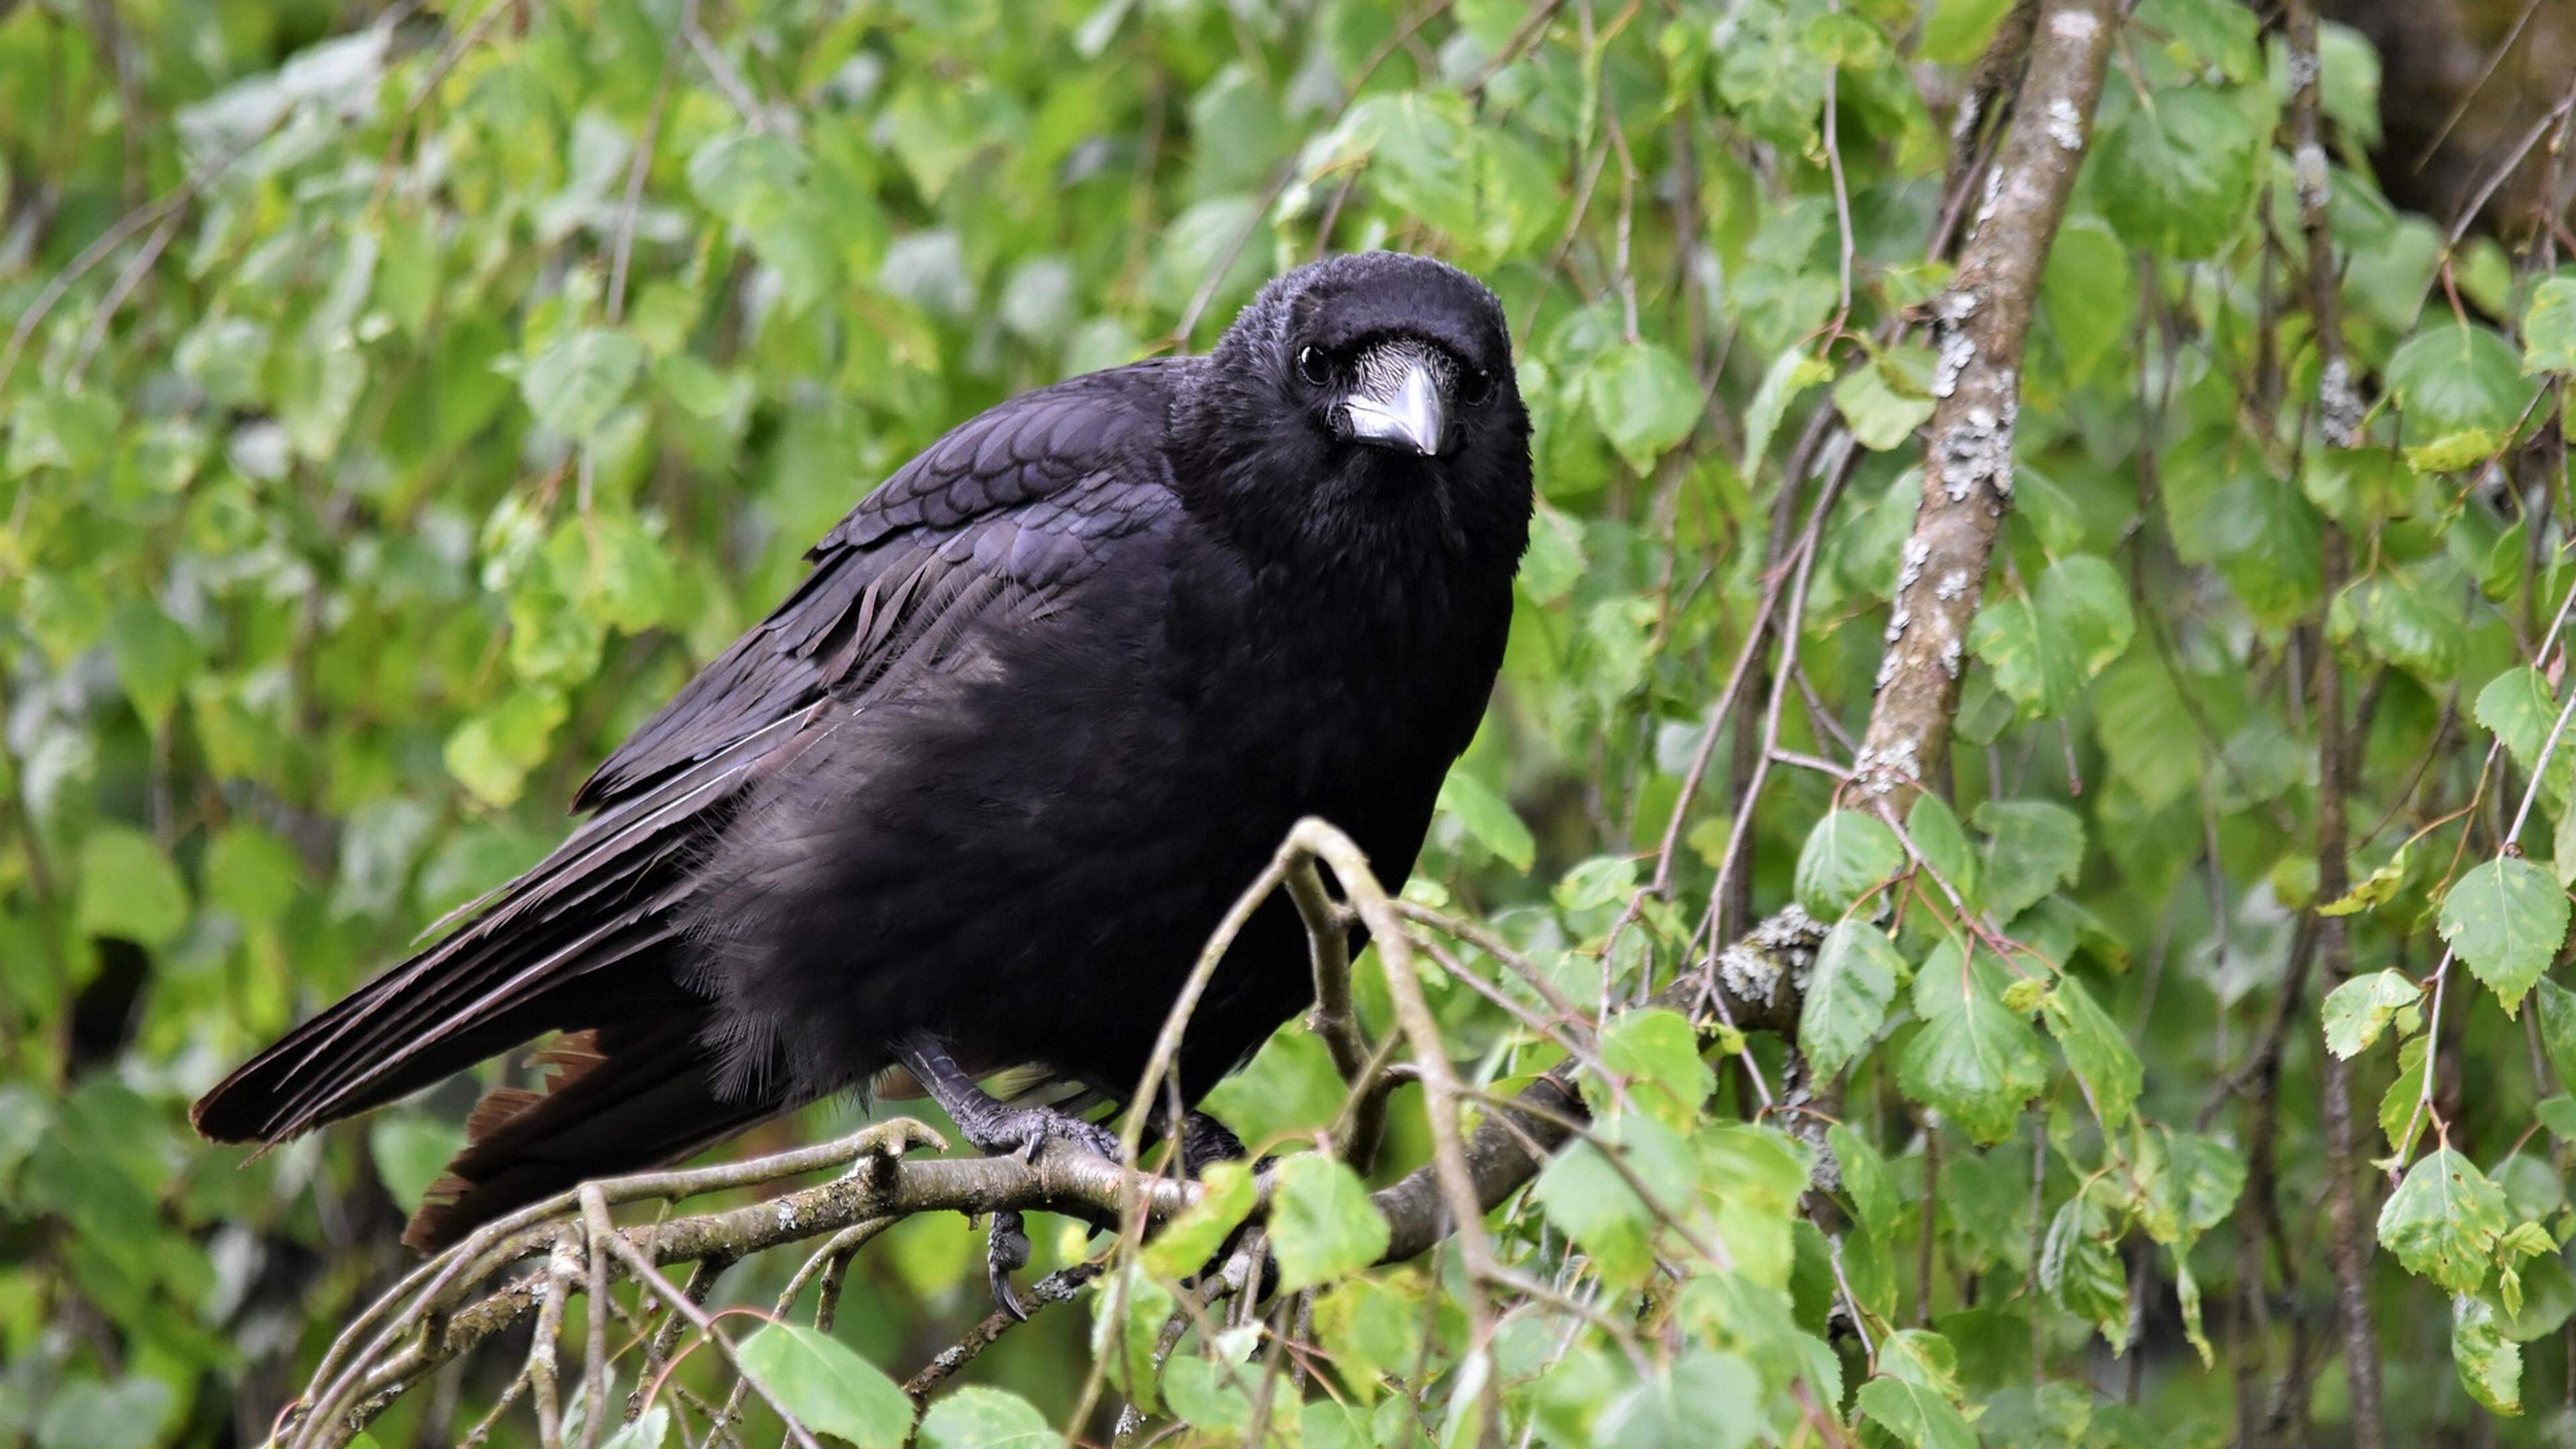 A causa da morte dos corvos por doenças foi descartada pelas análises realizadas.